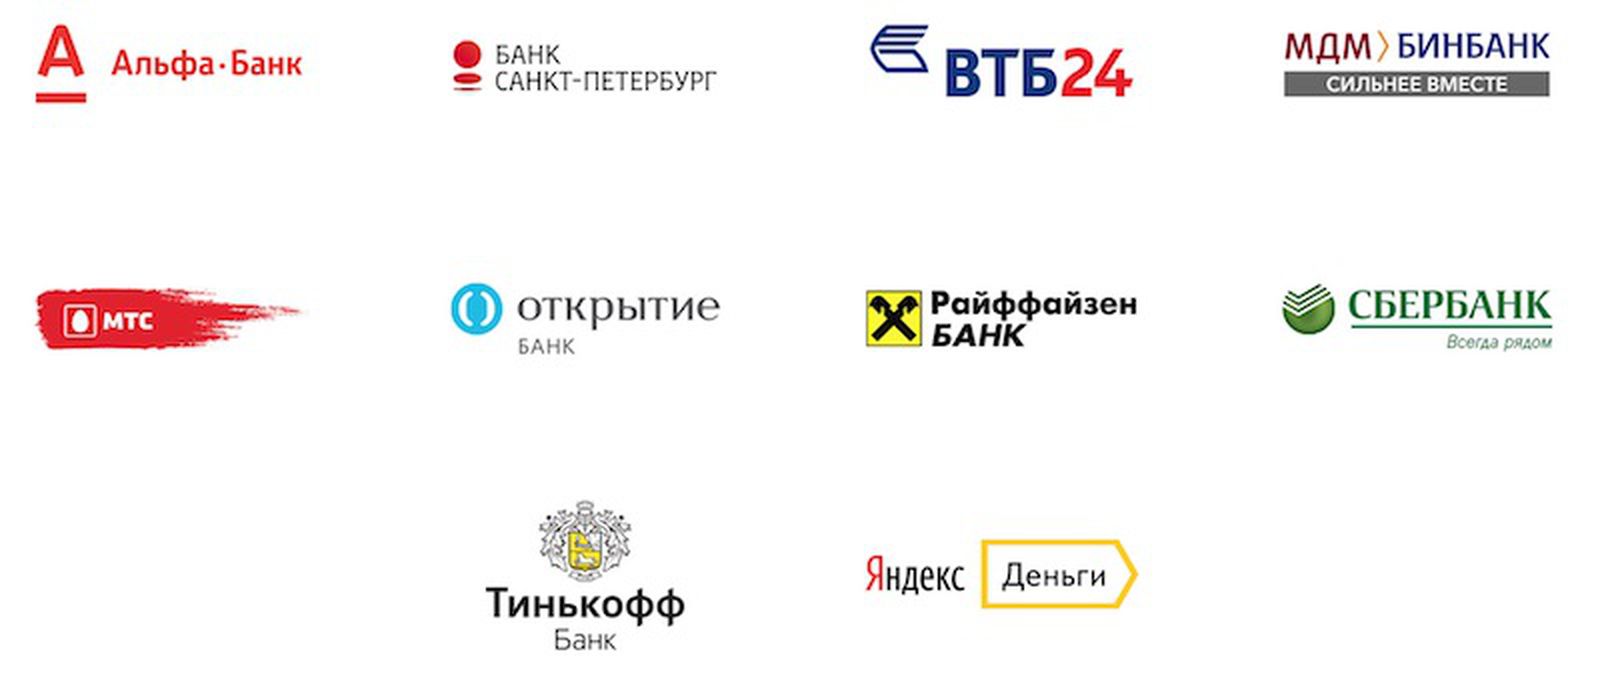 Банки партнеры юникредит банка. Банки партнеры. Российские банки. Список партнеров. Банки партнеры список.